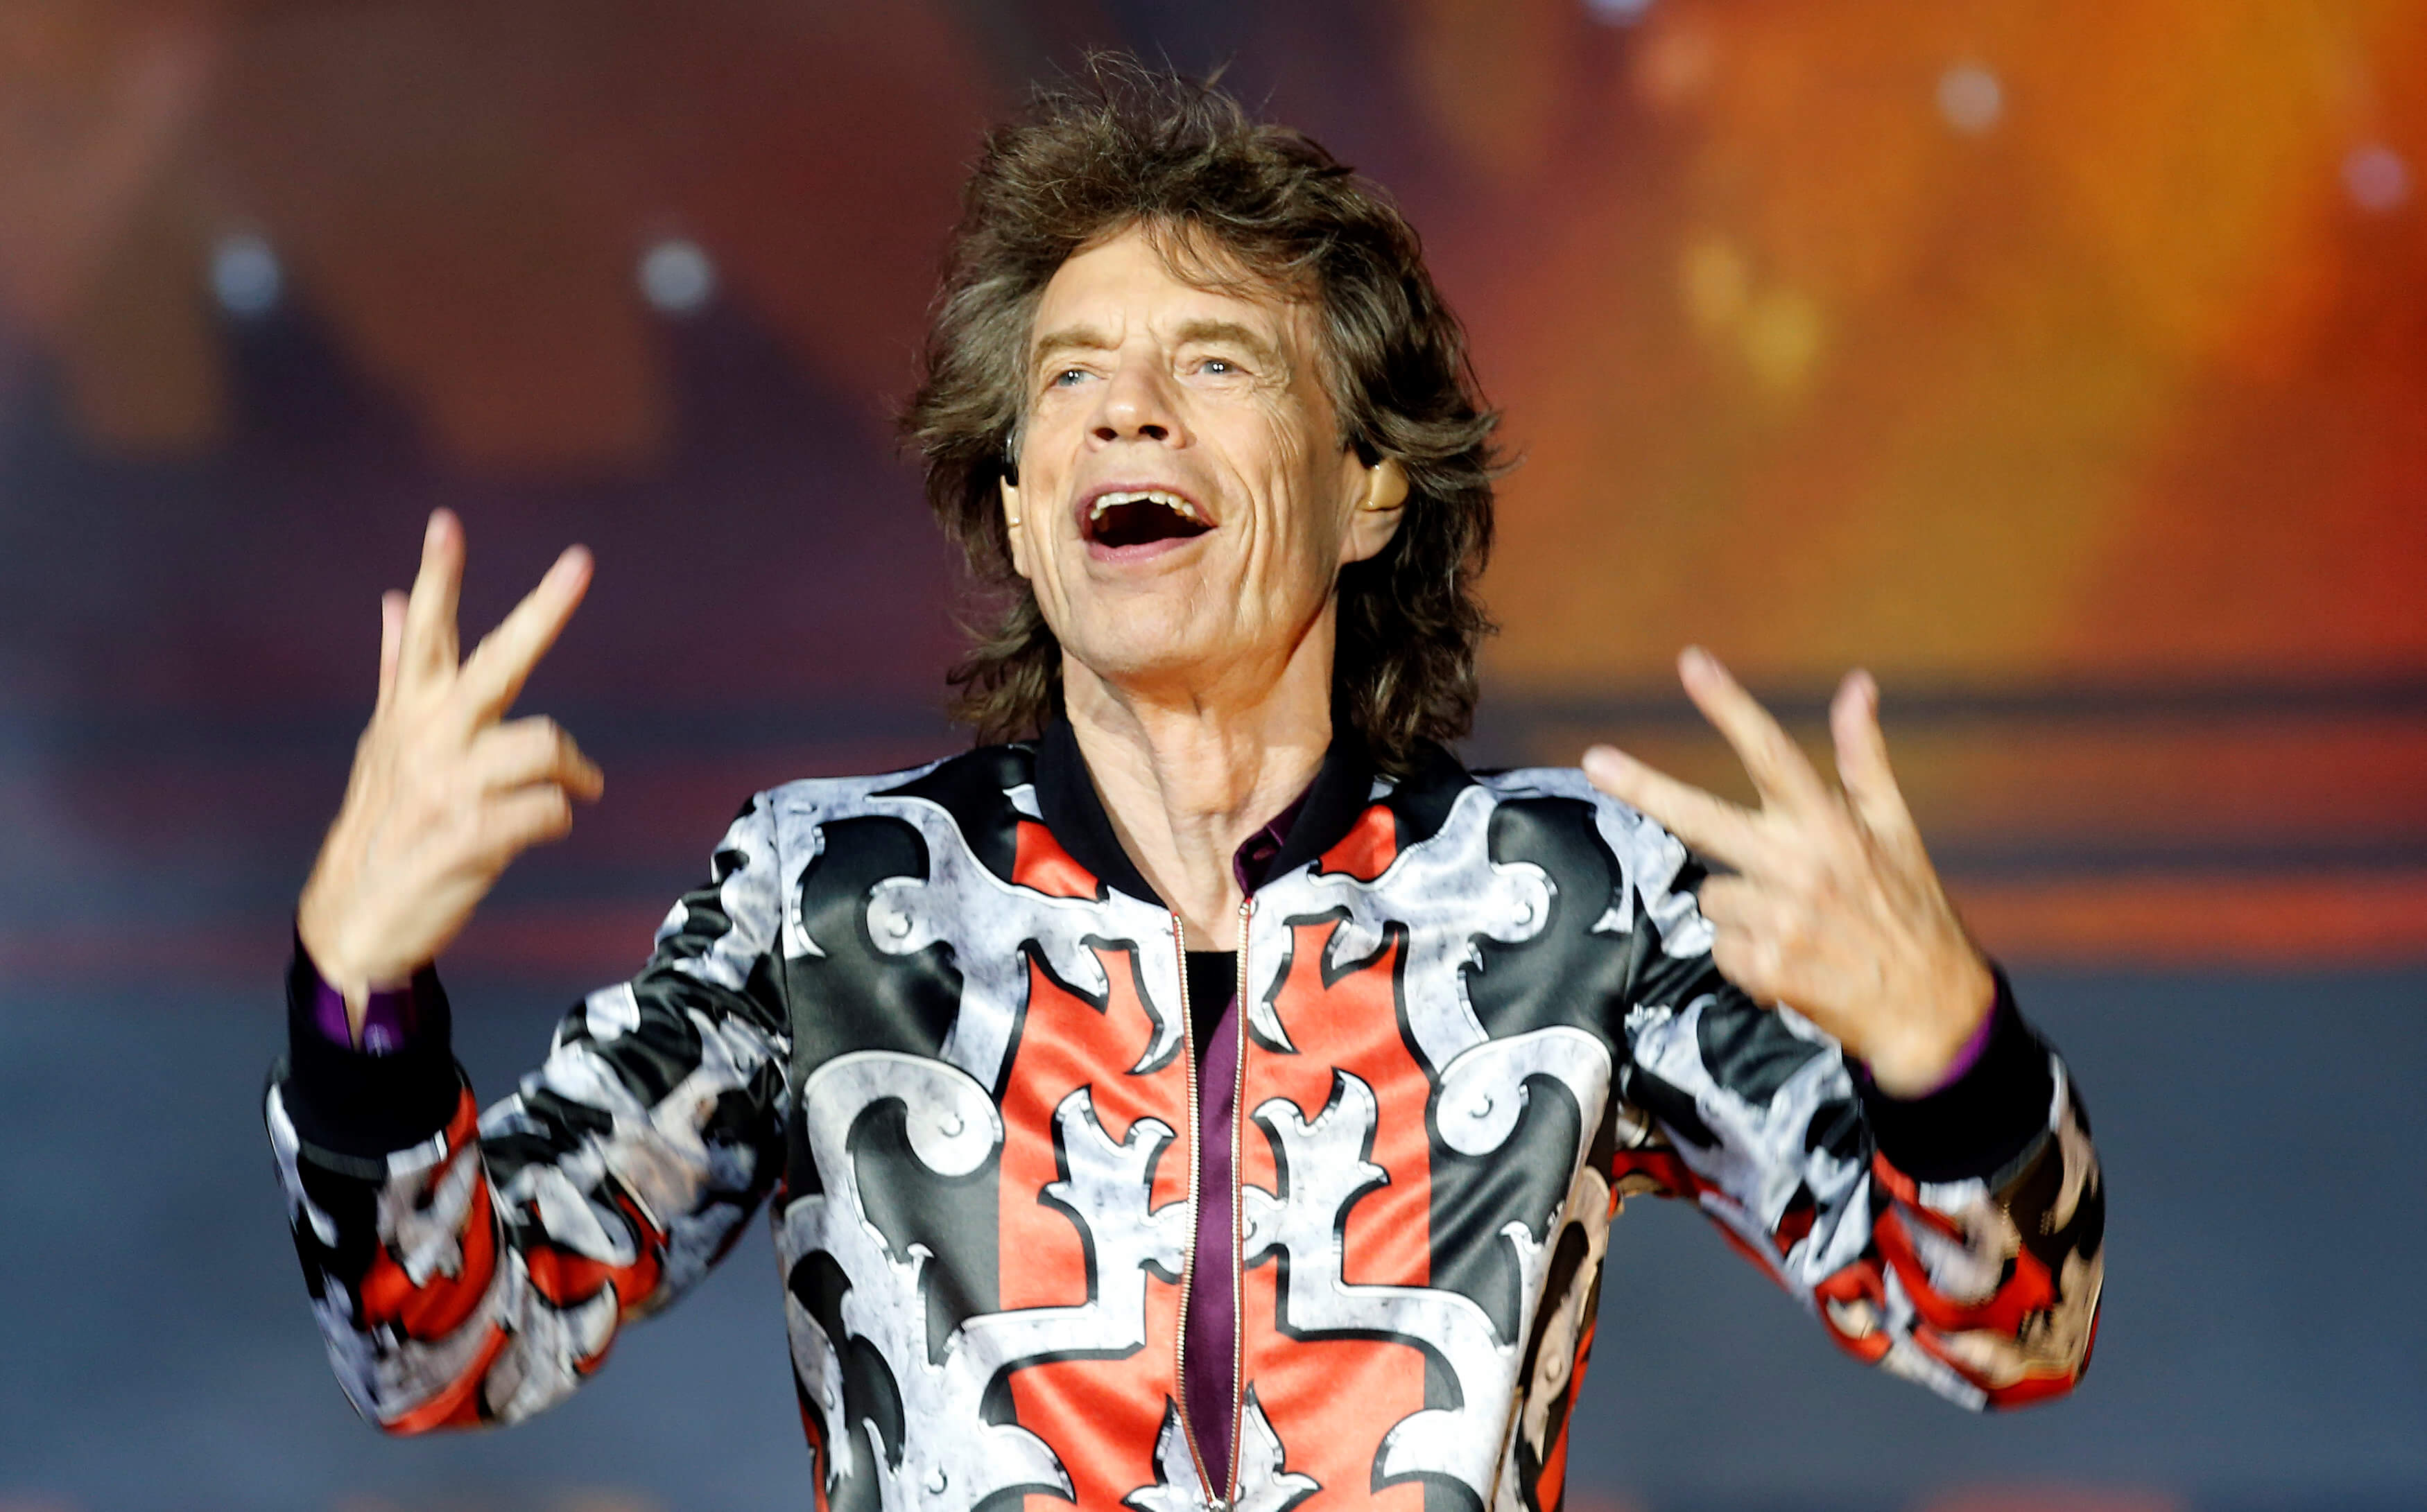 La maldición Mick Jagger Mundiales futbol